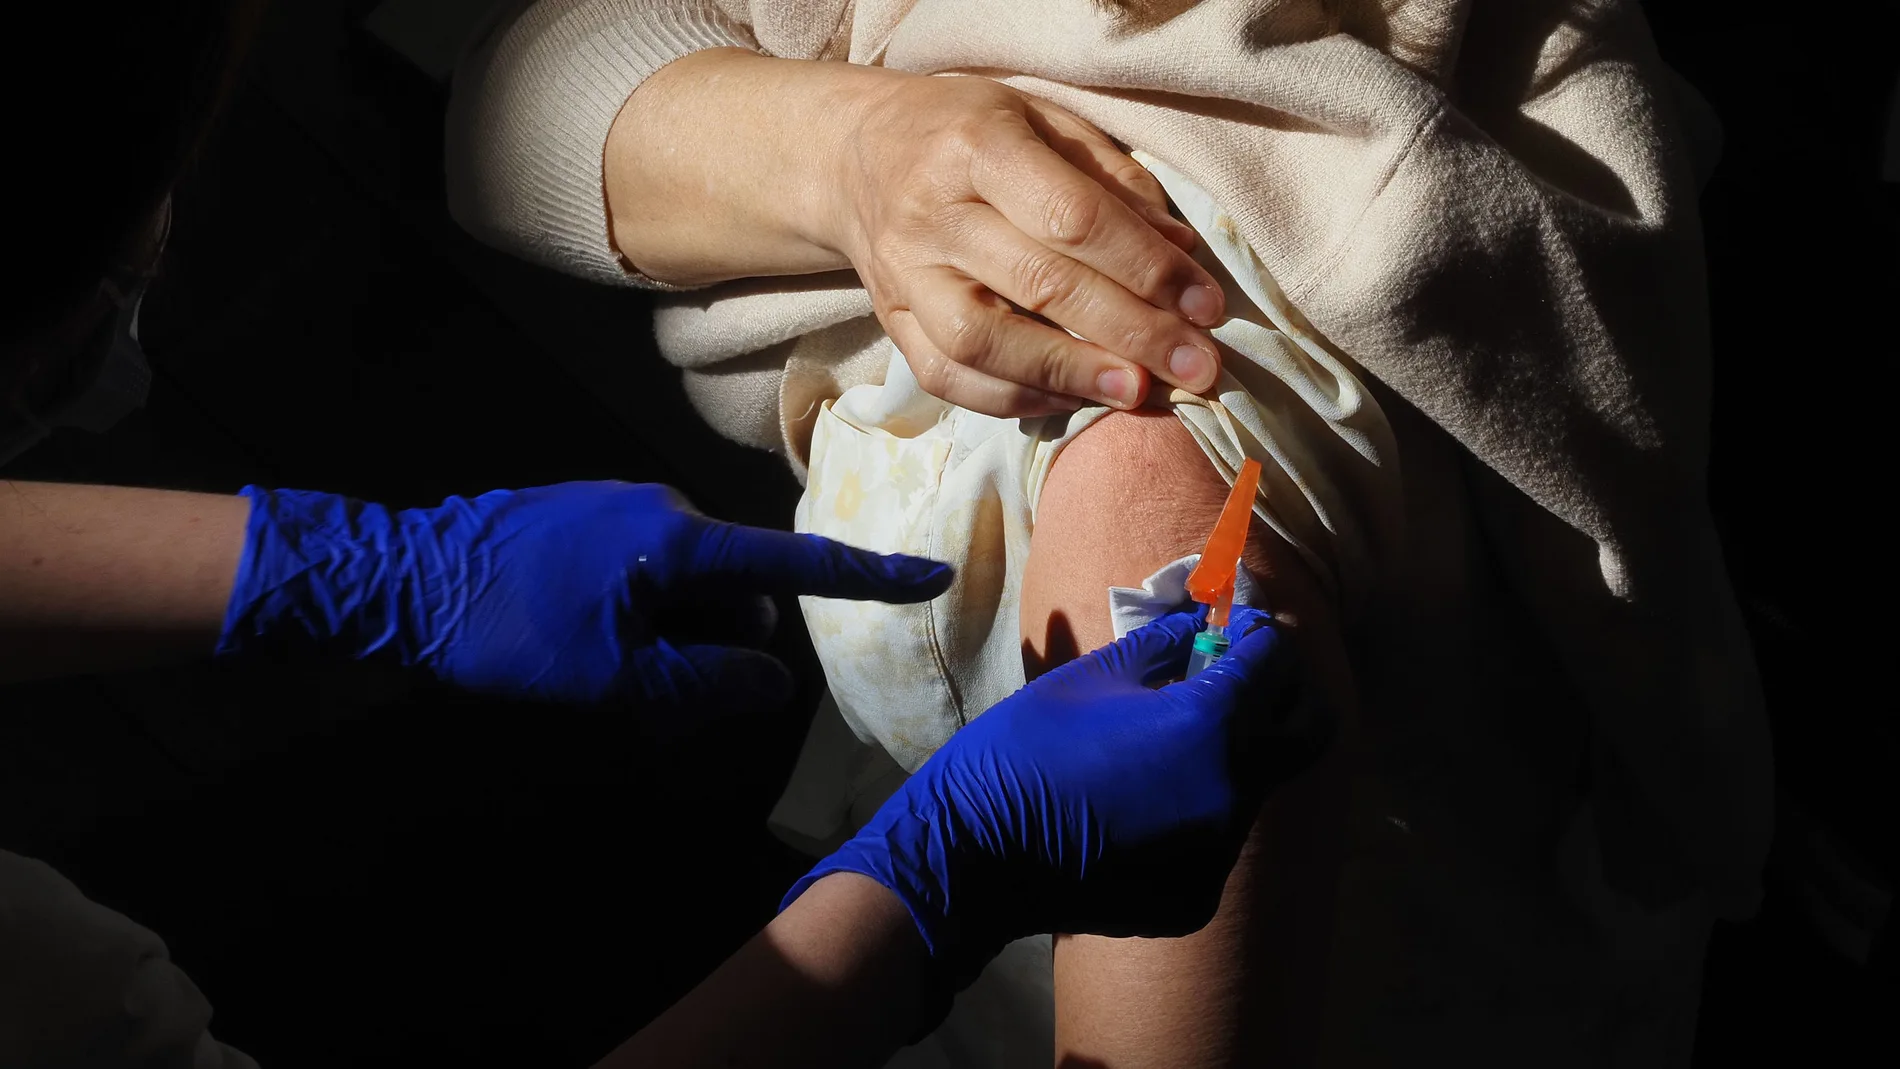 Un trabajador sanitario suministra la vacuna contra el Covid-19 a una persona, en el Centro Cultural Miguel Delibes